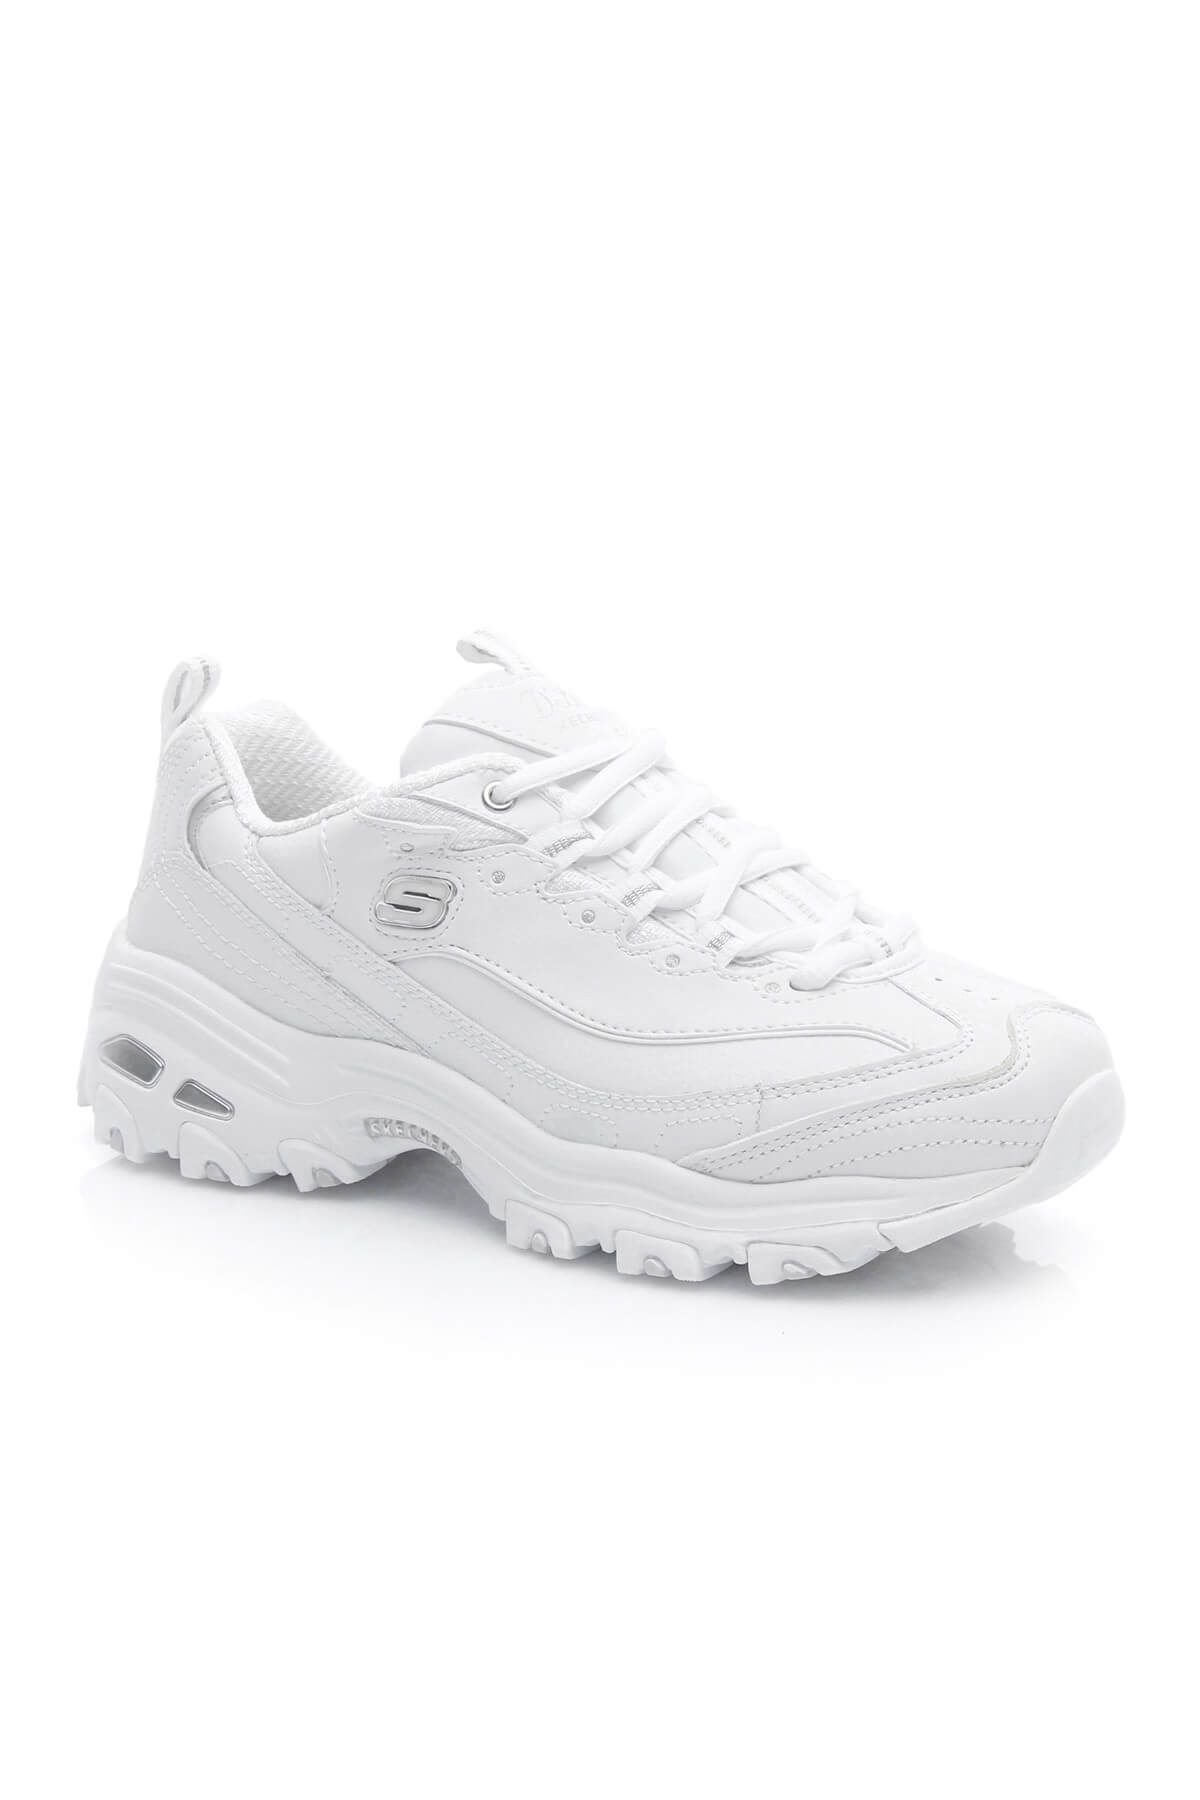 Skechers Kadın D'Lites Beyaz Ayakkabı 11931-S